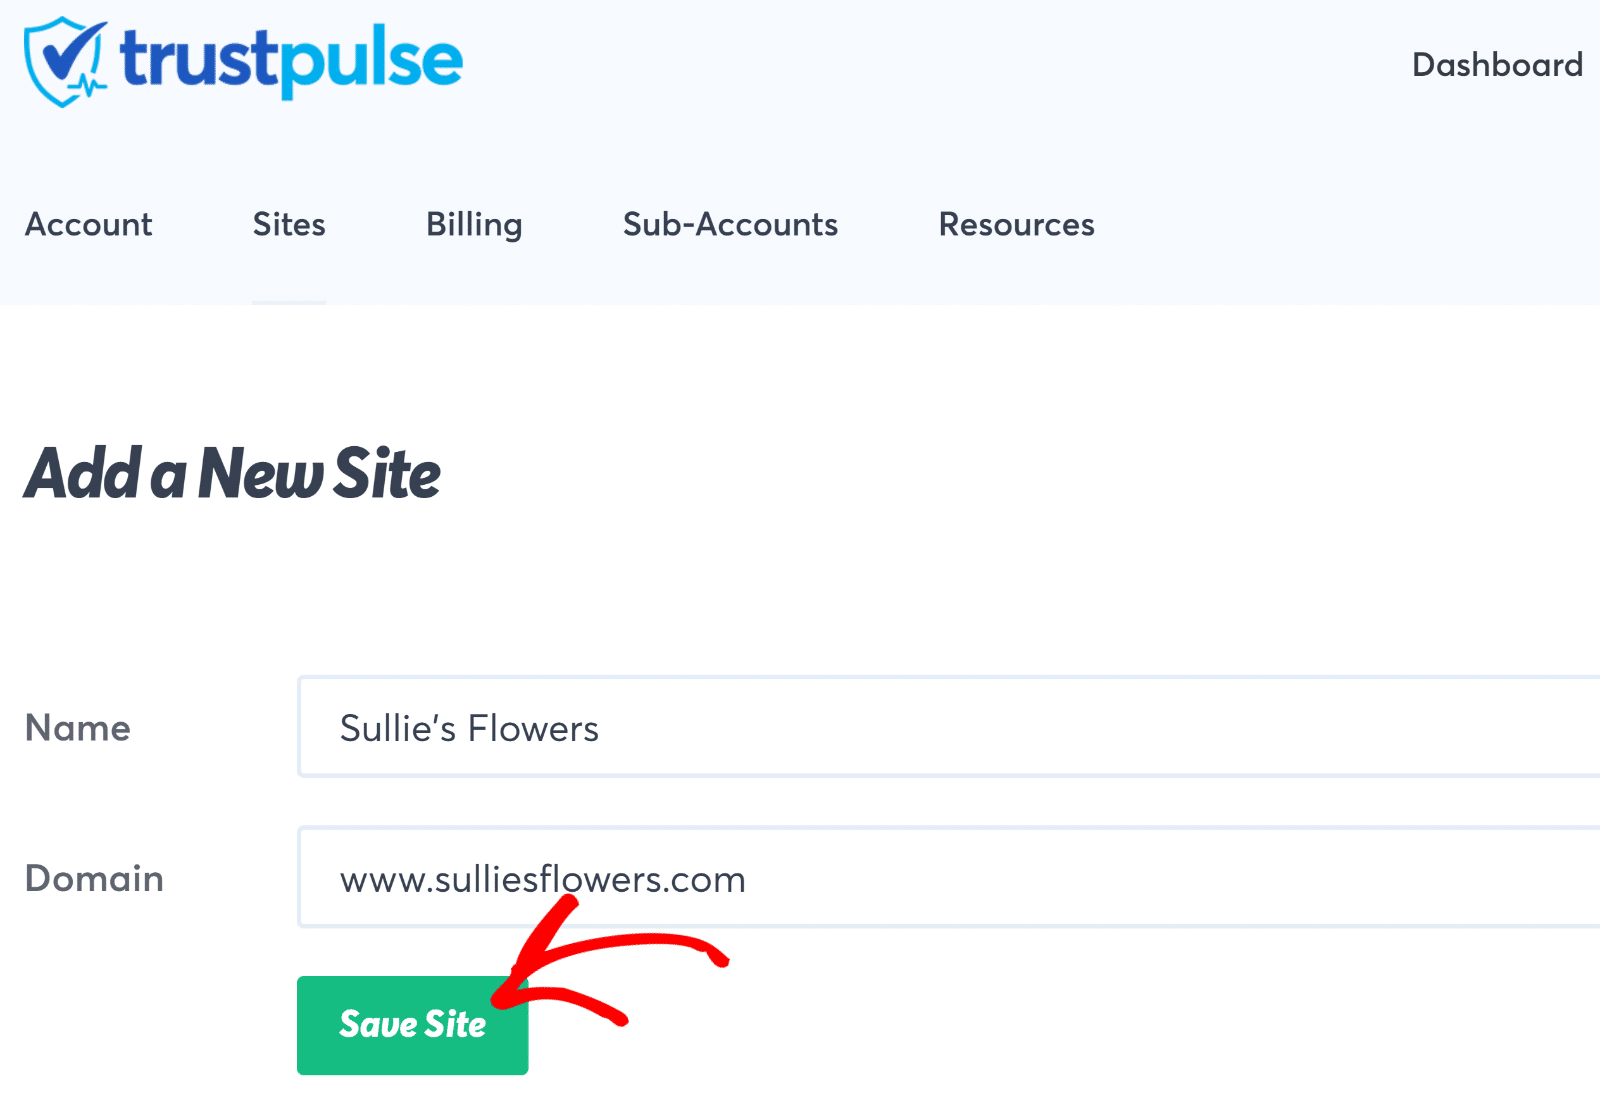 Save site - TrustPulse